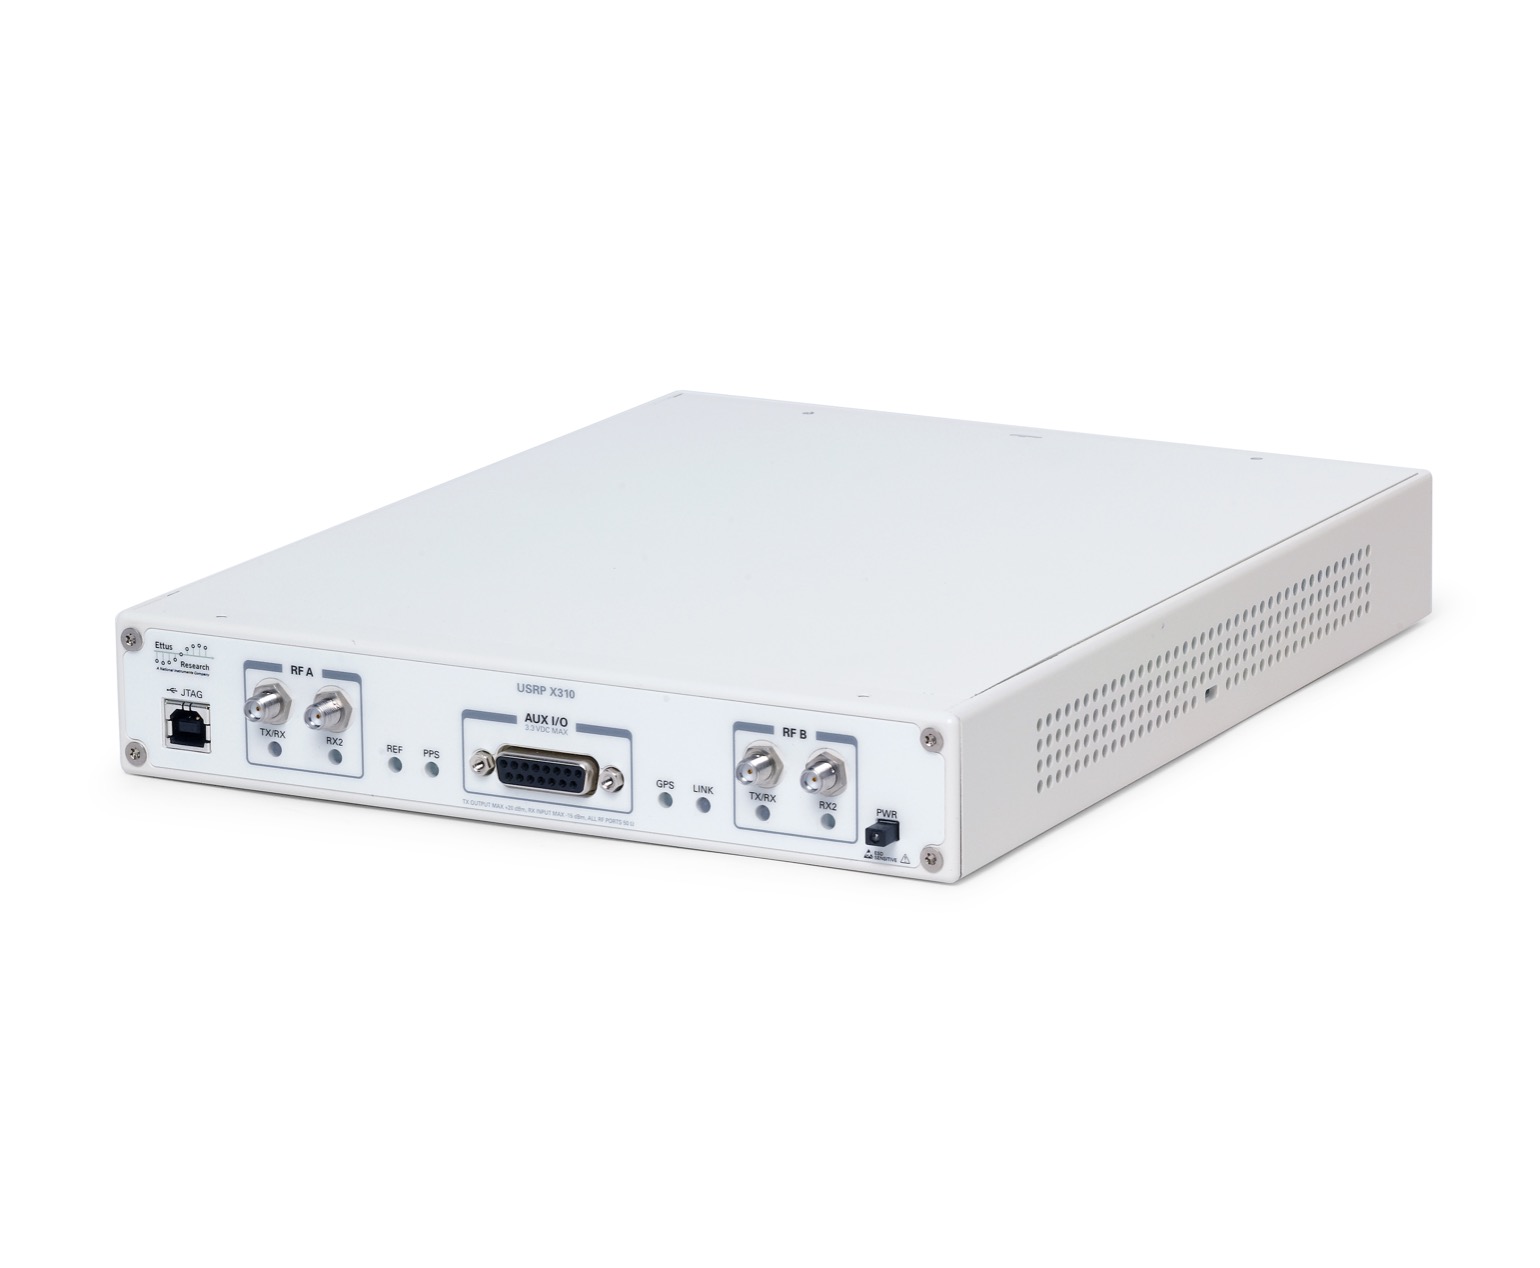 Программно определяемые радиоустройства National Instruments (NI) USRP X310, платформа ВЧ прототипирования с частотным диапазоном до 6 ГГц